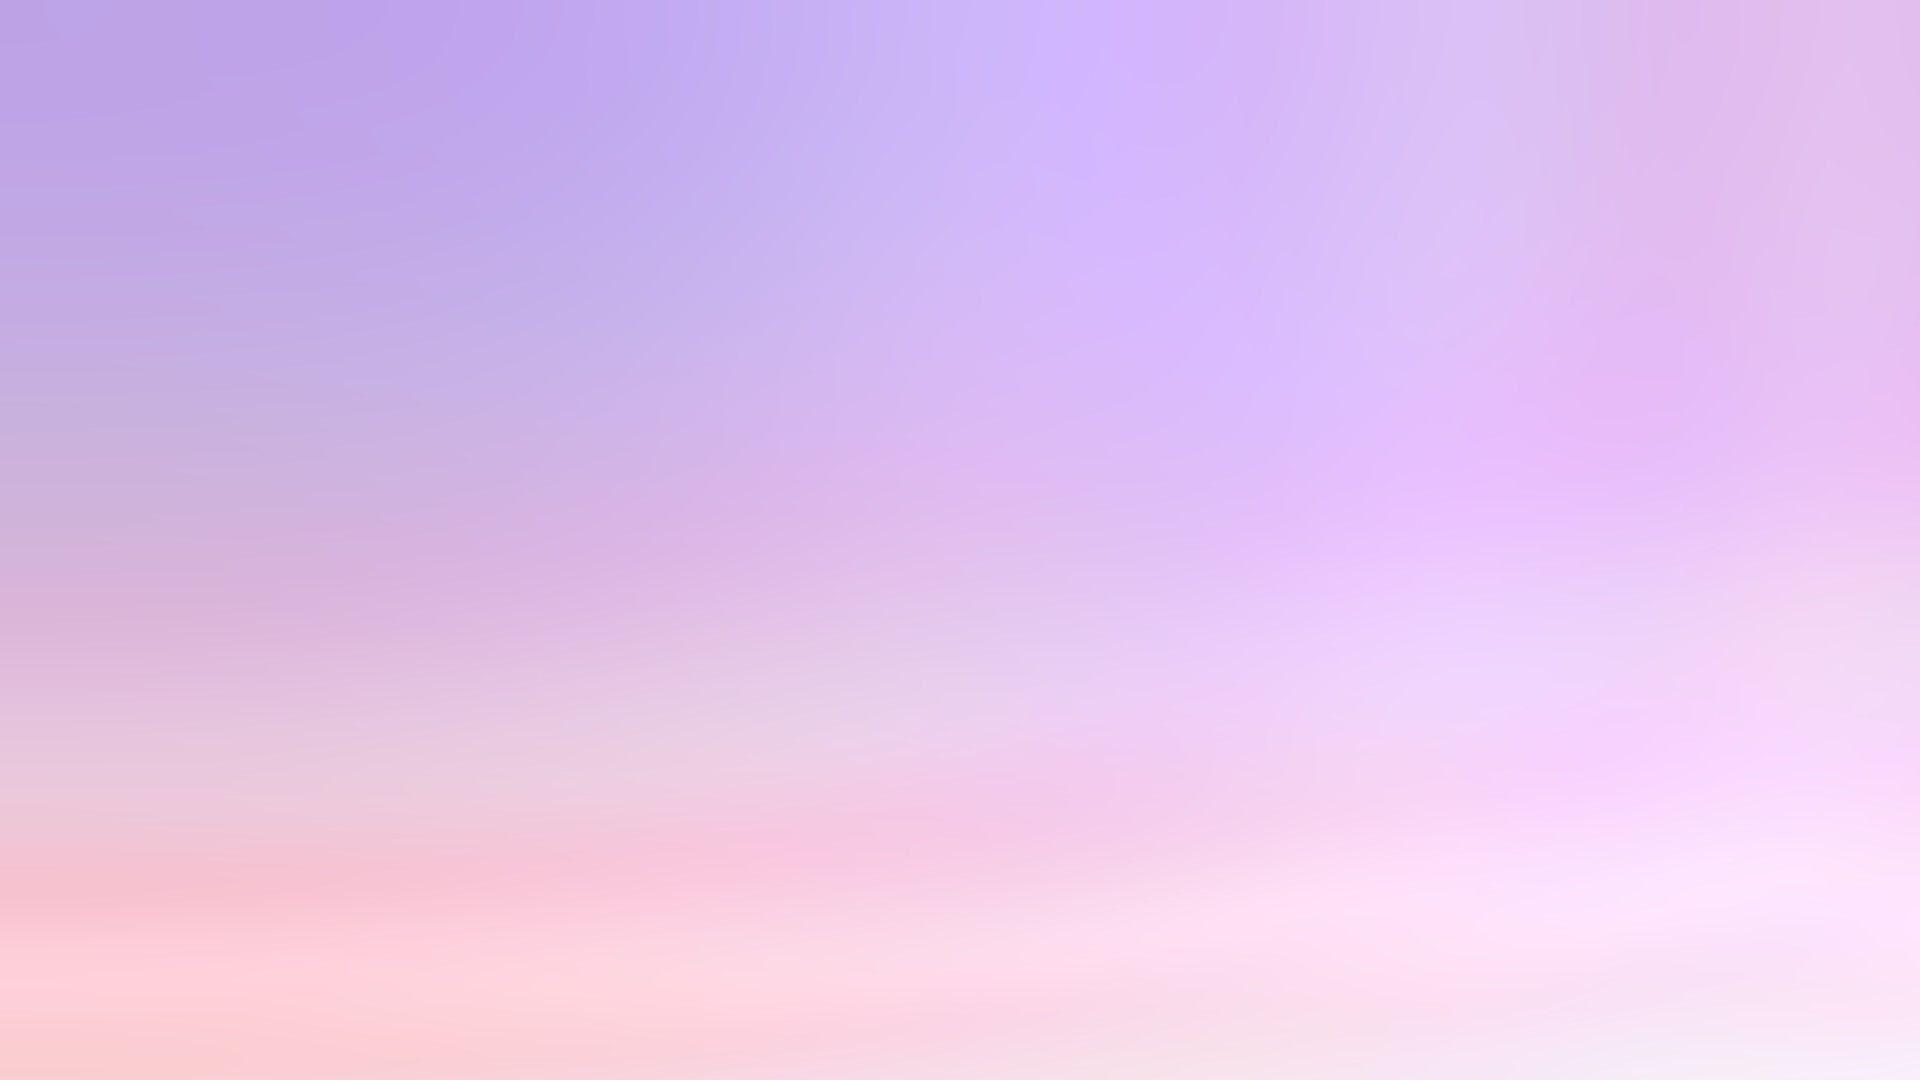 Bạn đang tìm kiếm hình nền desktop đẹp và ấn tượng? Hãy thử ngay những Light Purple Desktop Wallpapers tuyệt đẹp này, chắc chắn sẽ làm bạn cảm thấy thư giãn và đón nhận một ngày mới tươi sáng!